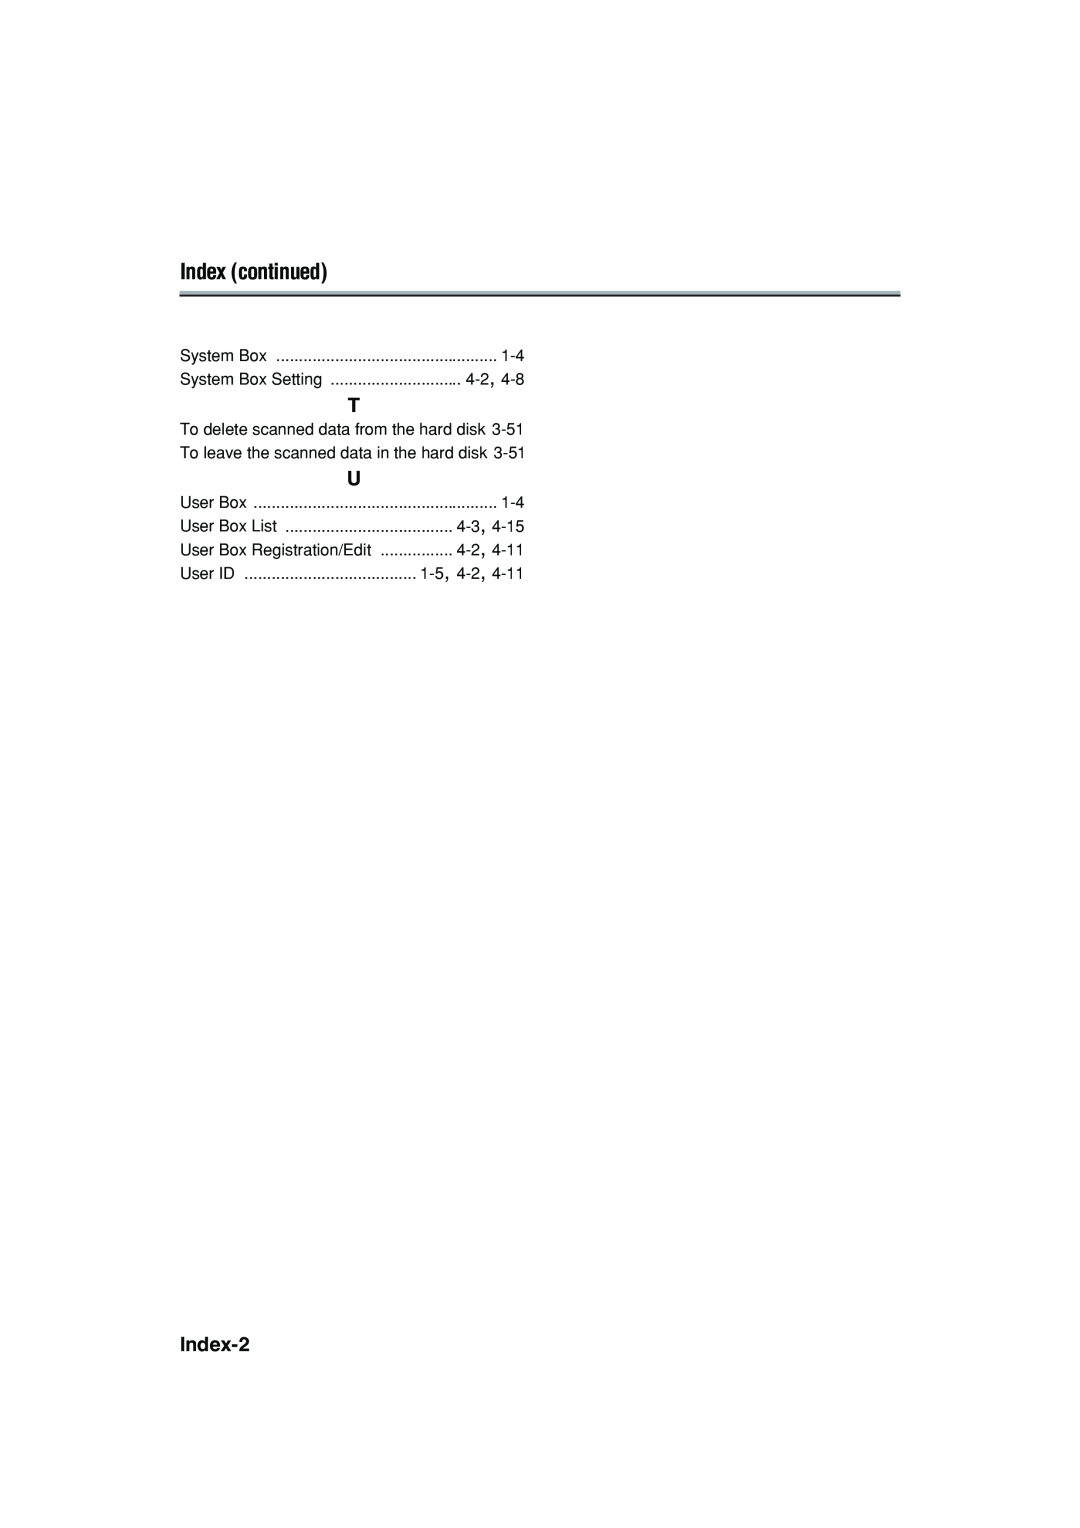 Konica Minolta 7222 manual Index continued, Index-2, System Box Setting, User ID, User Box List 